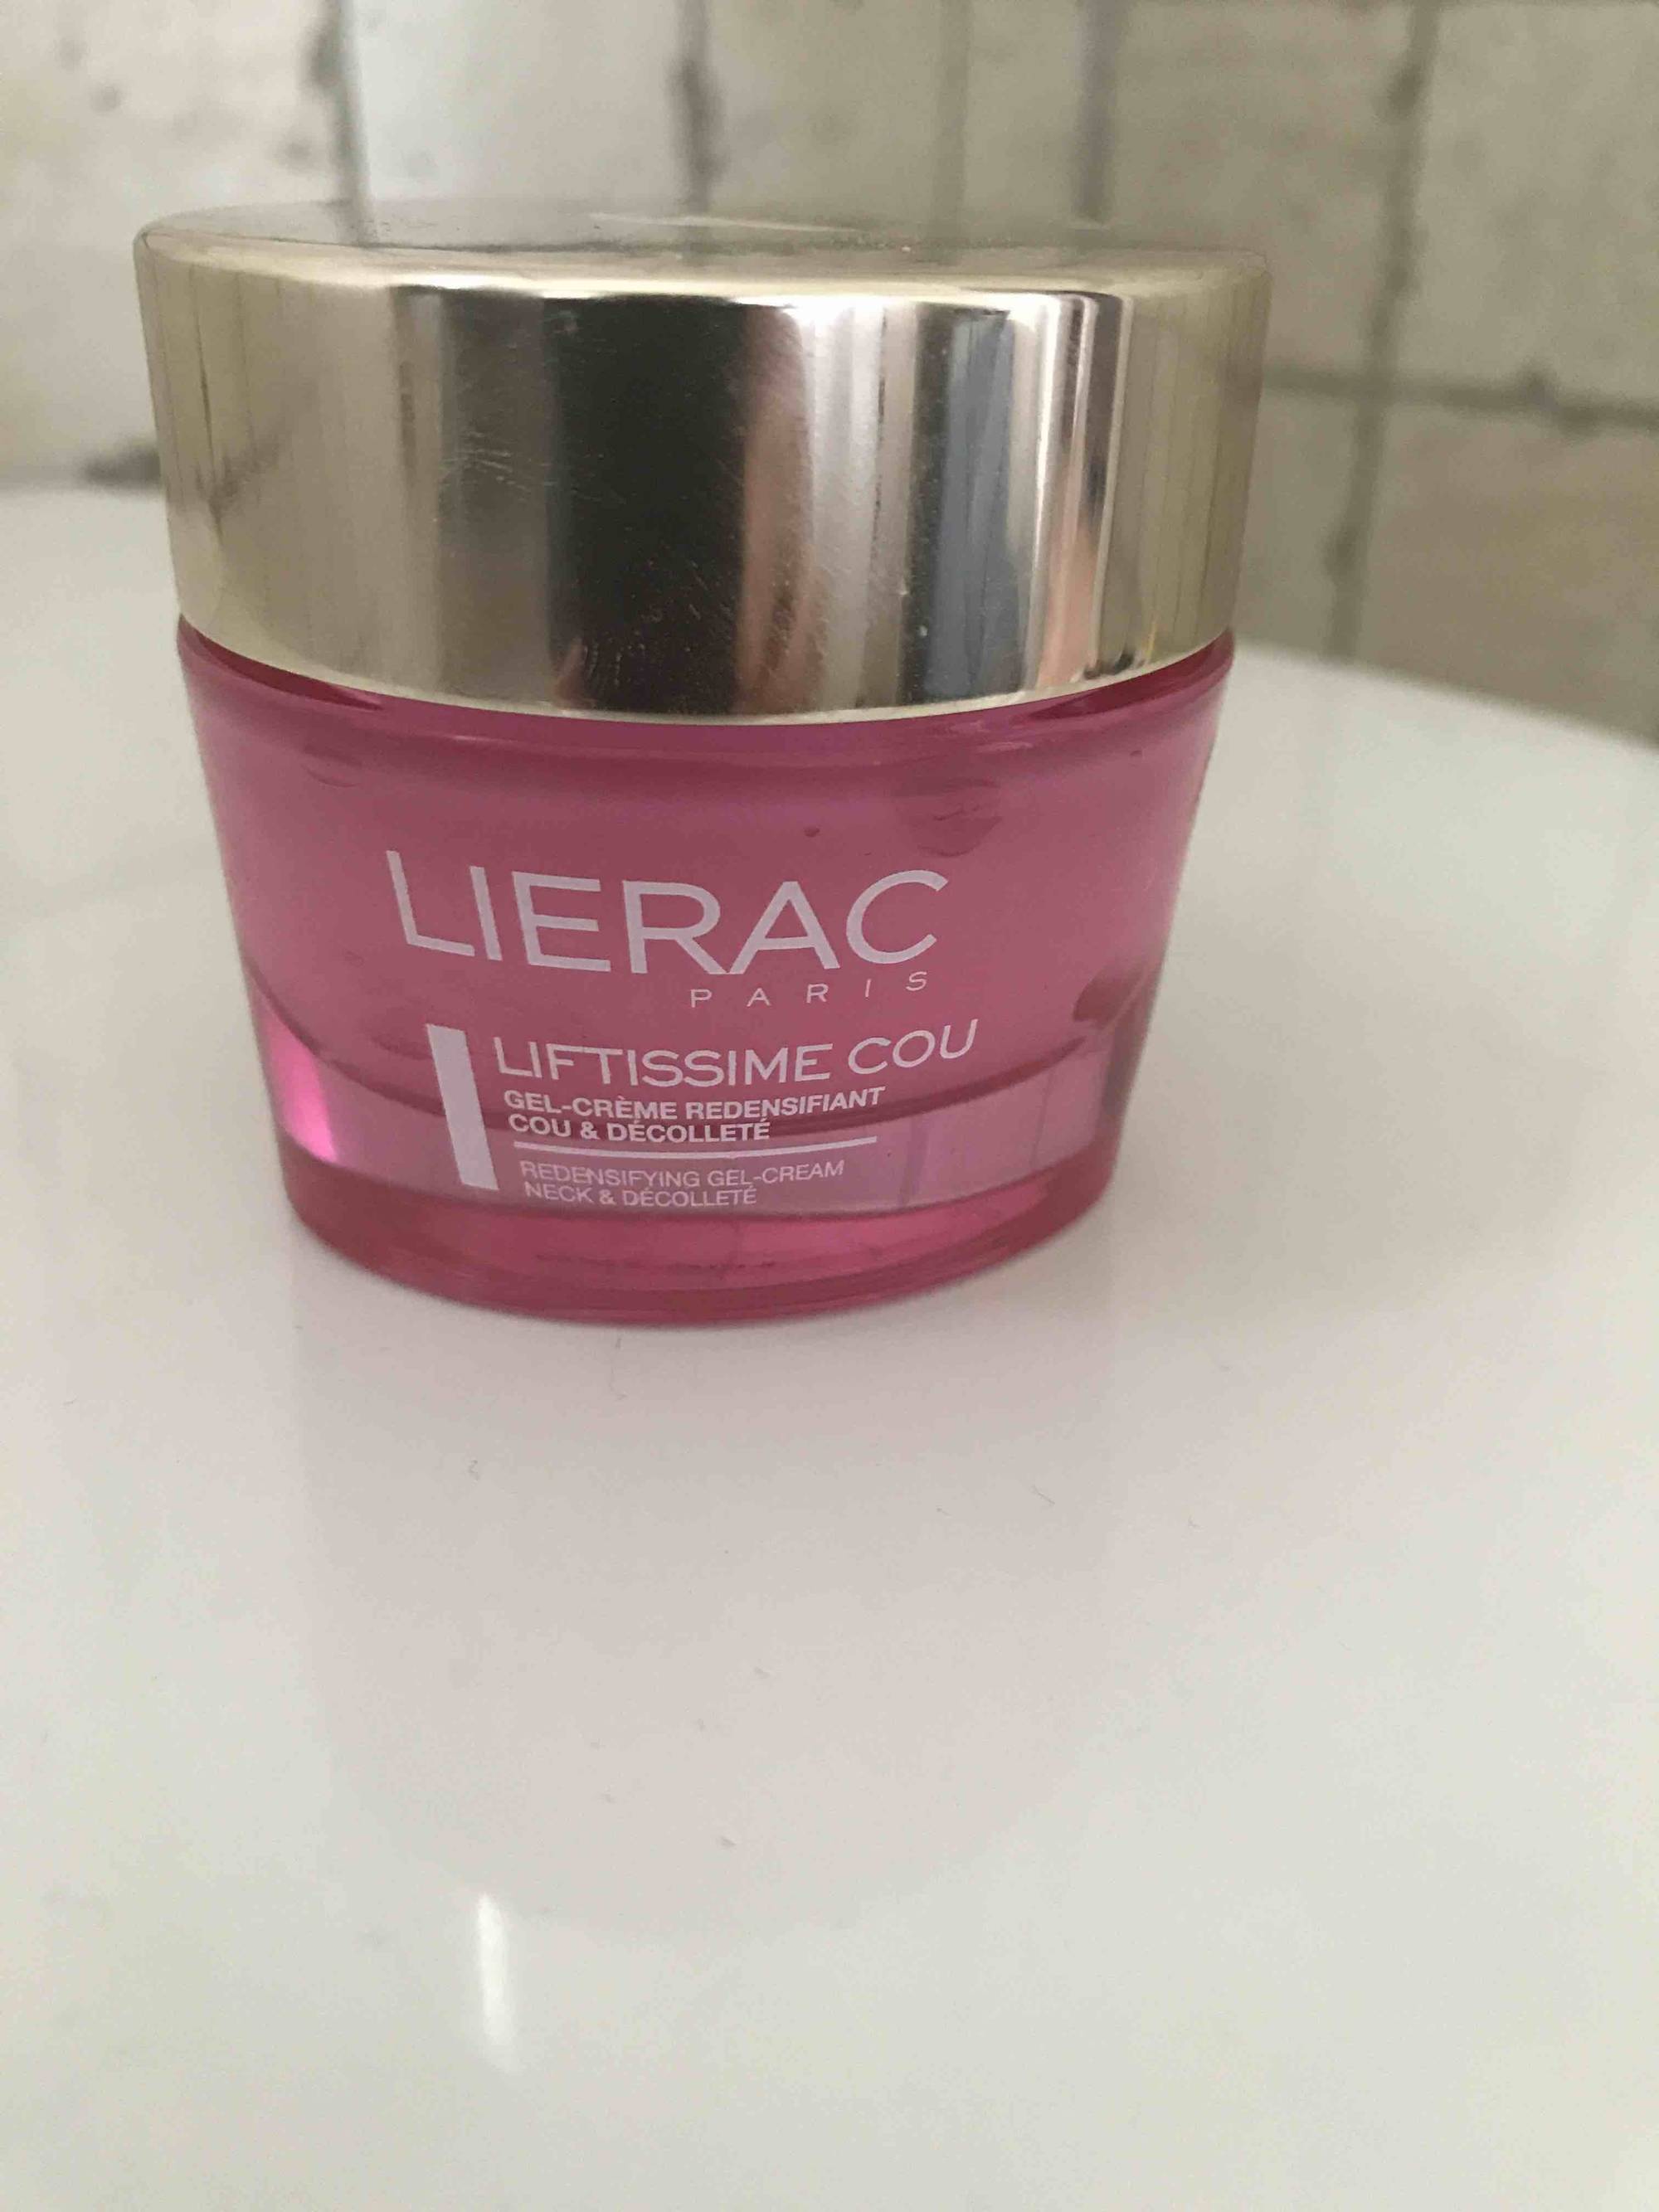 LIÉRAC PARIS - Liftissime Cou - Gel-Crème redensifiant